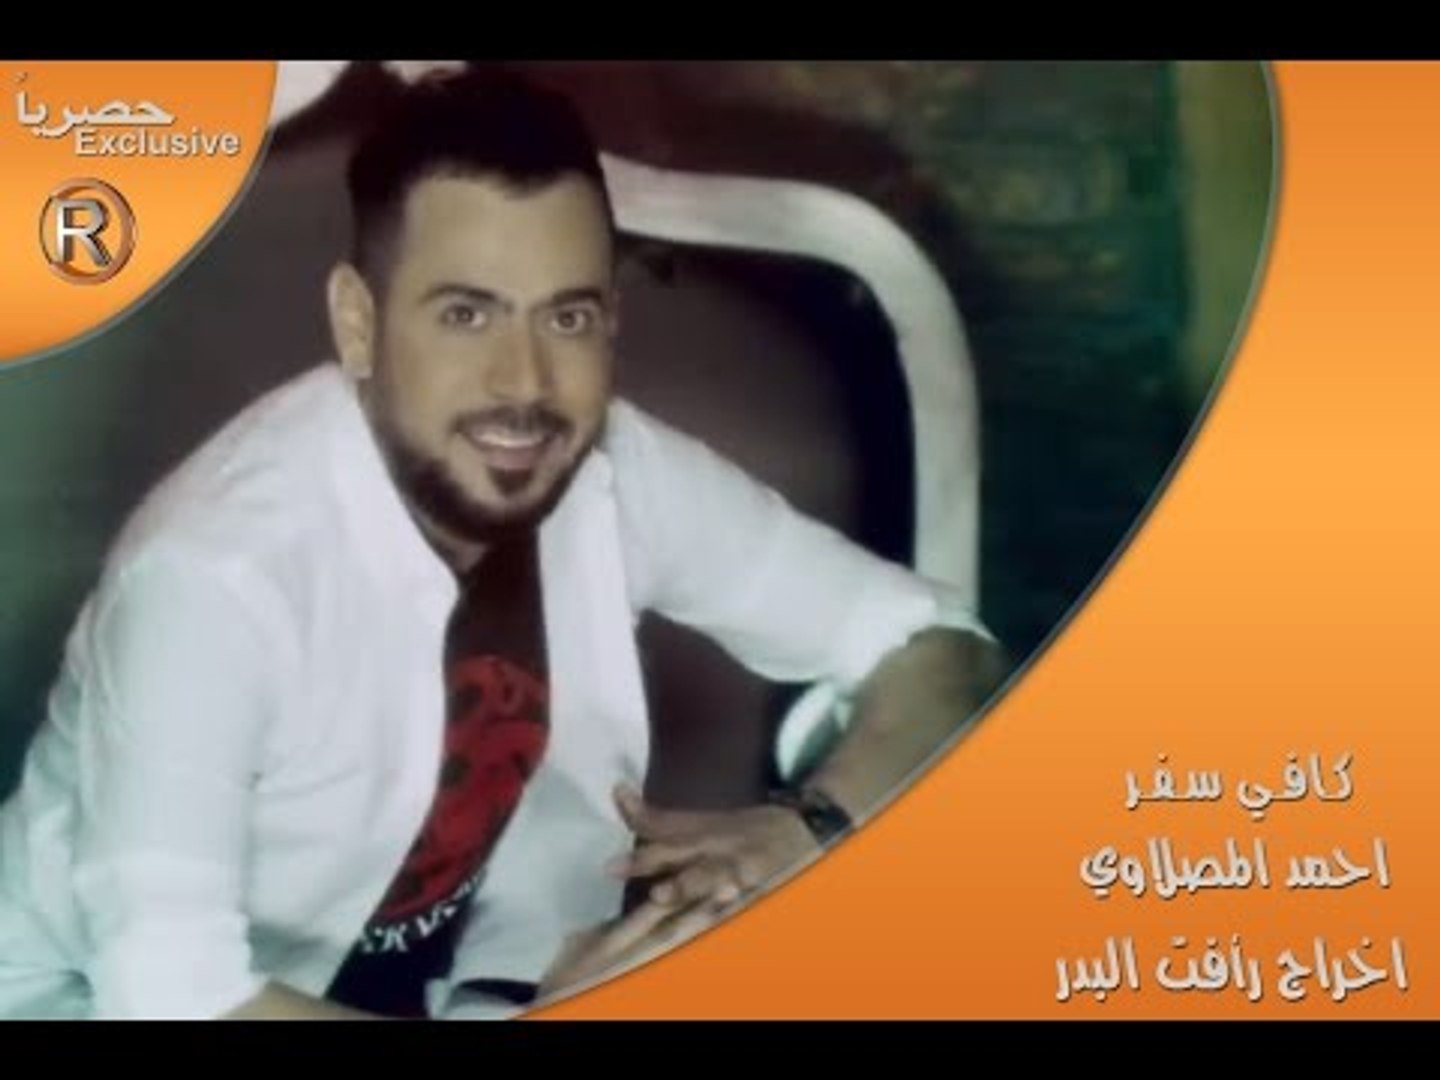 احمد المصلاوي - كافي سفر / Video Clip - فيديو Dailymotion